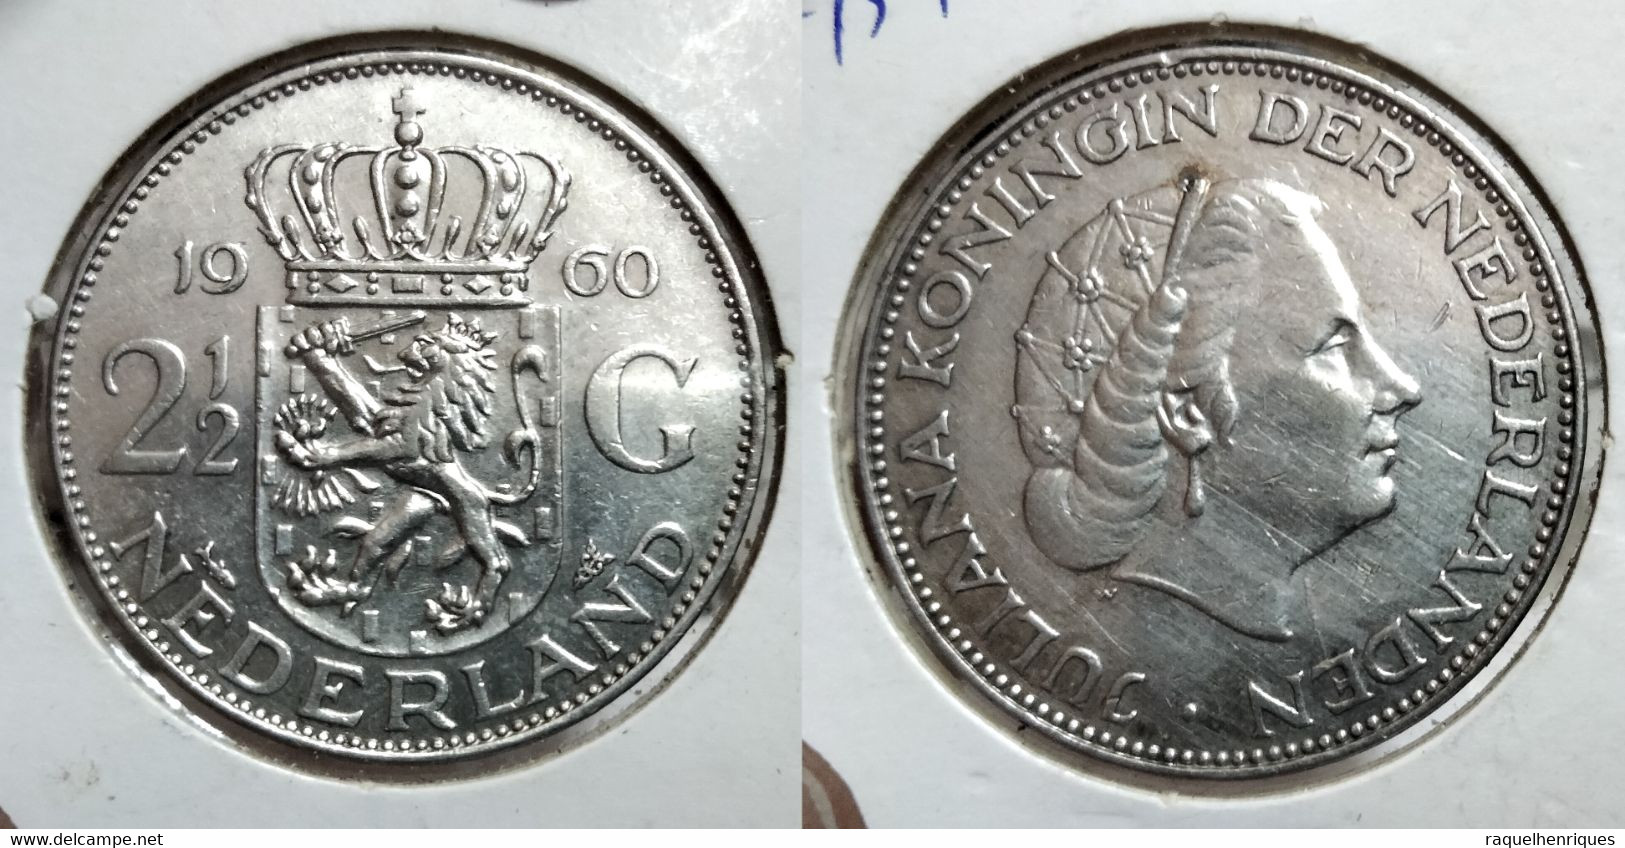 NETHERLANDS 2-1/2 GULDEN 1960 Km# 185 (G#08-159) - 2 1/2 Gulden